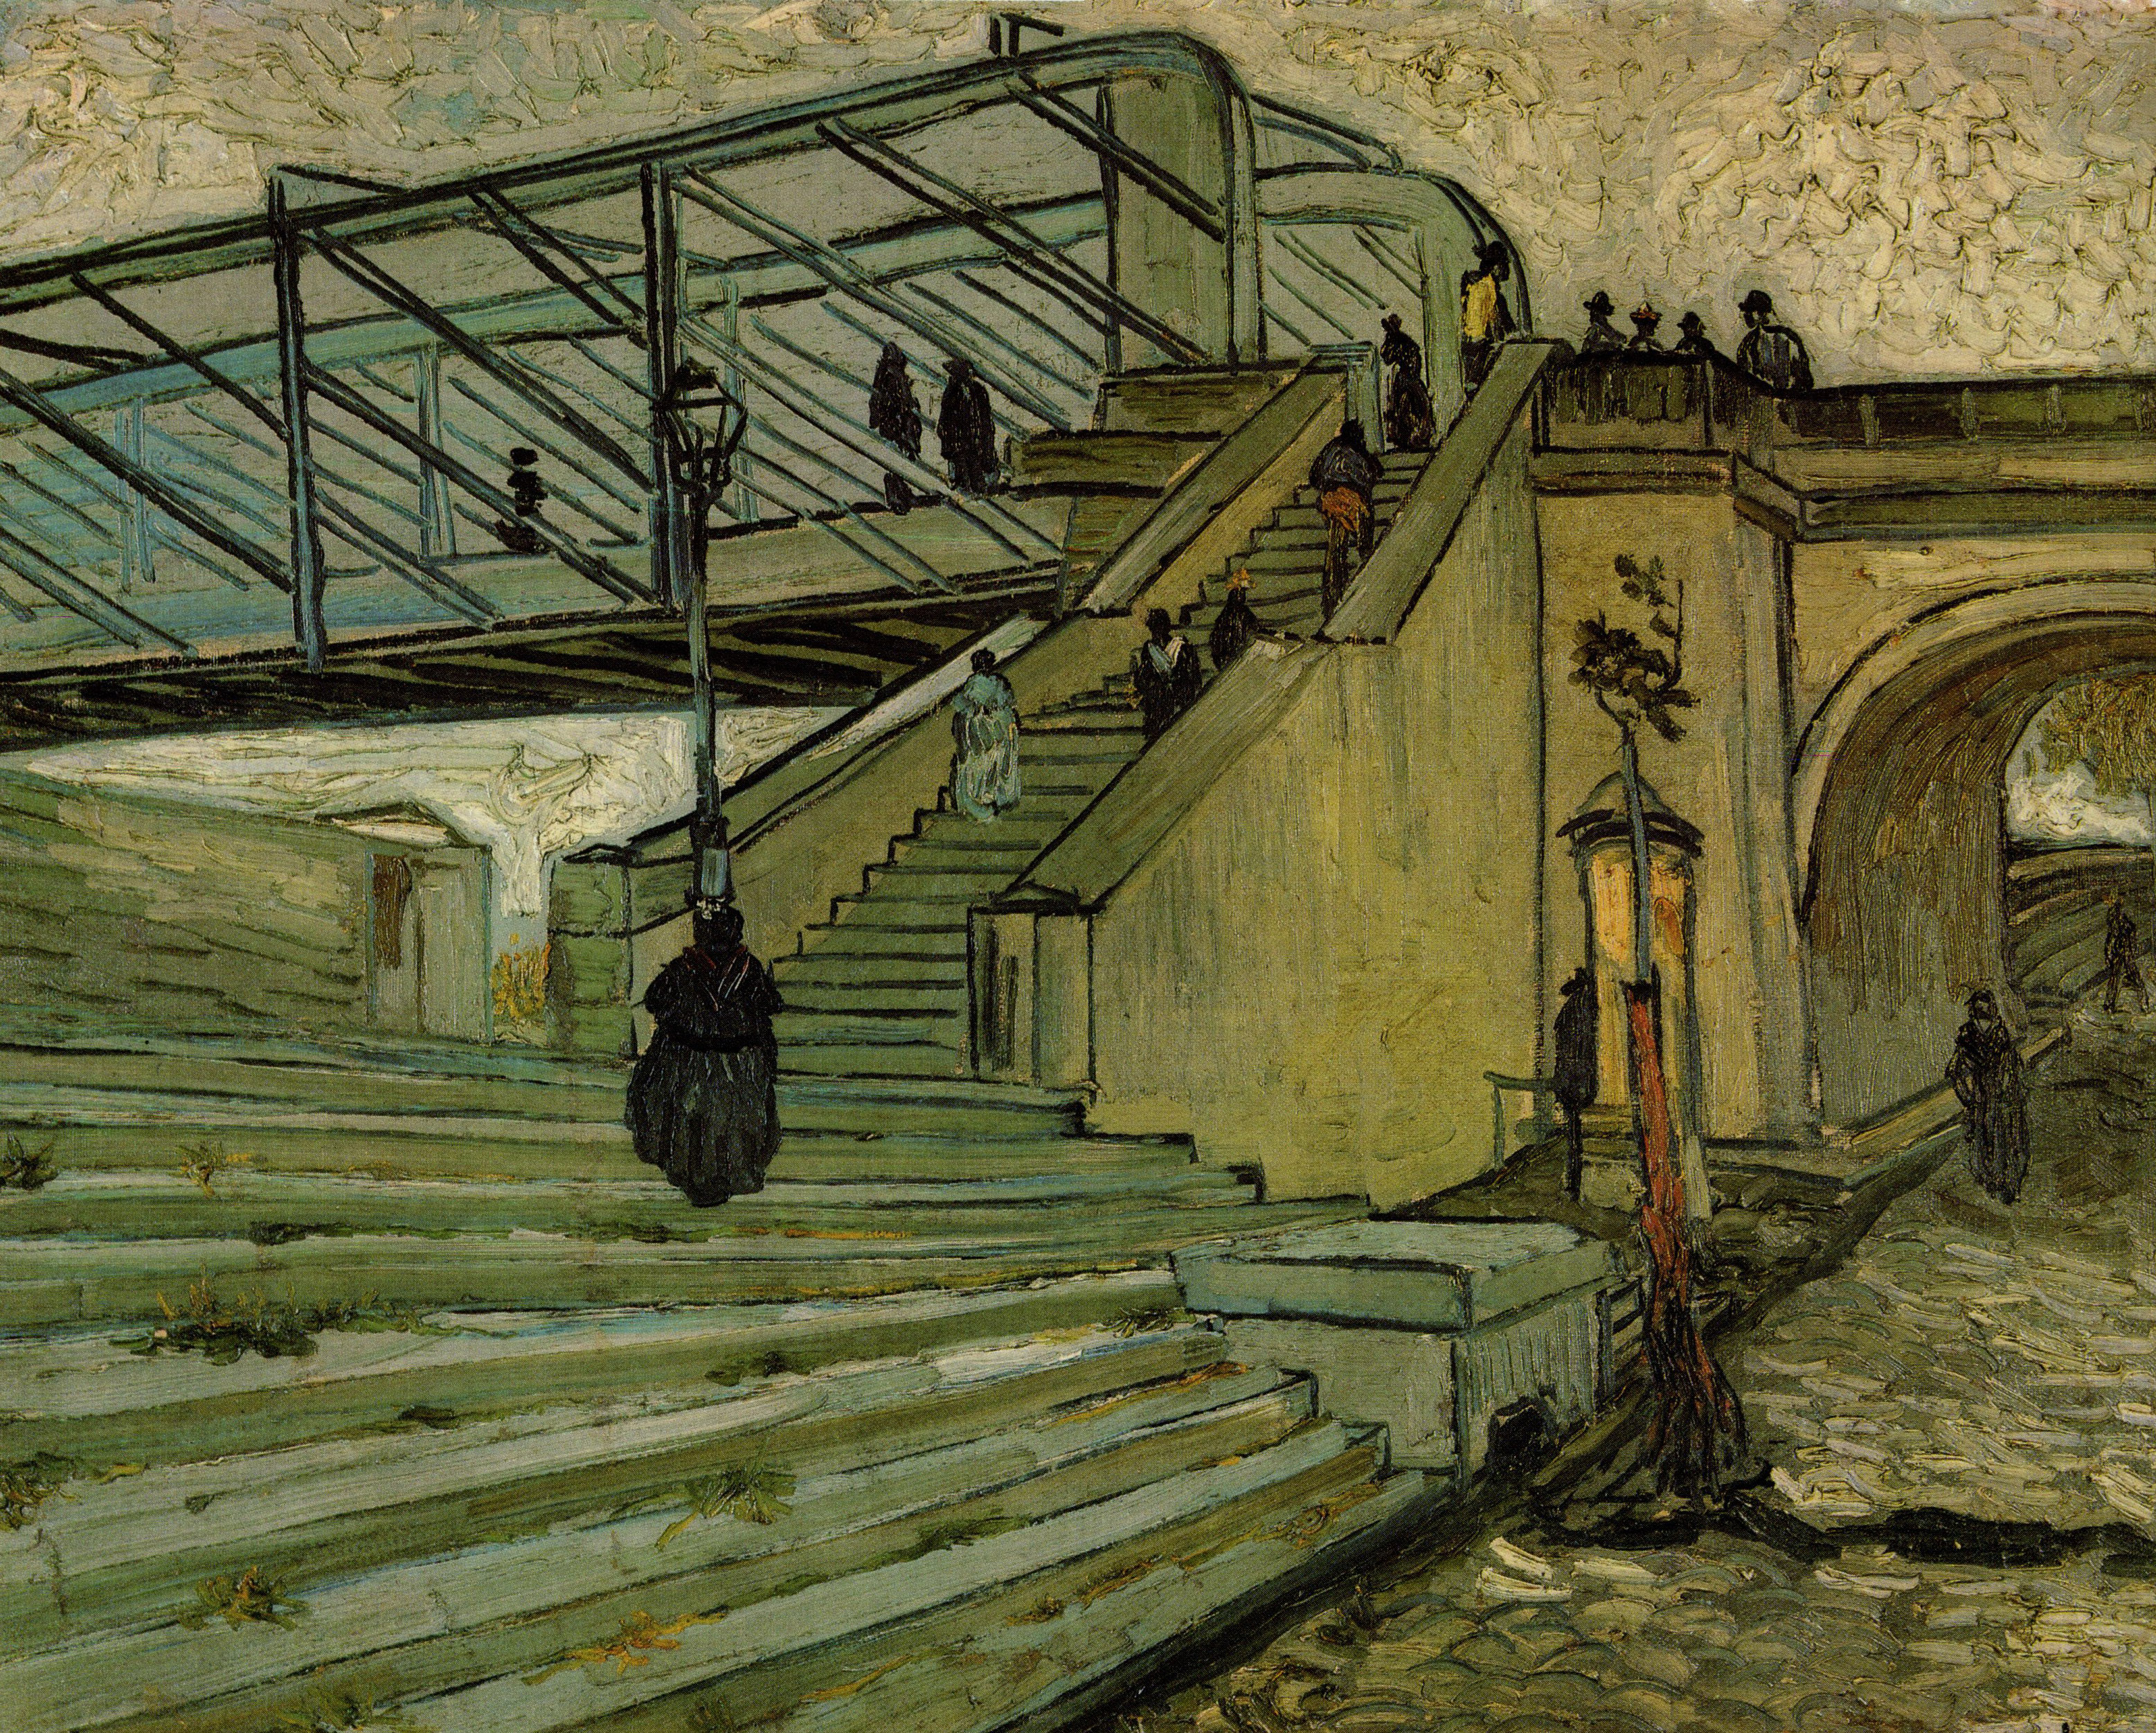 Circa Art - Vincent van Gogh - Circa Art - Vincent van Gogh 62.jpg